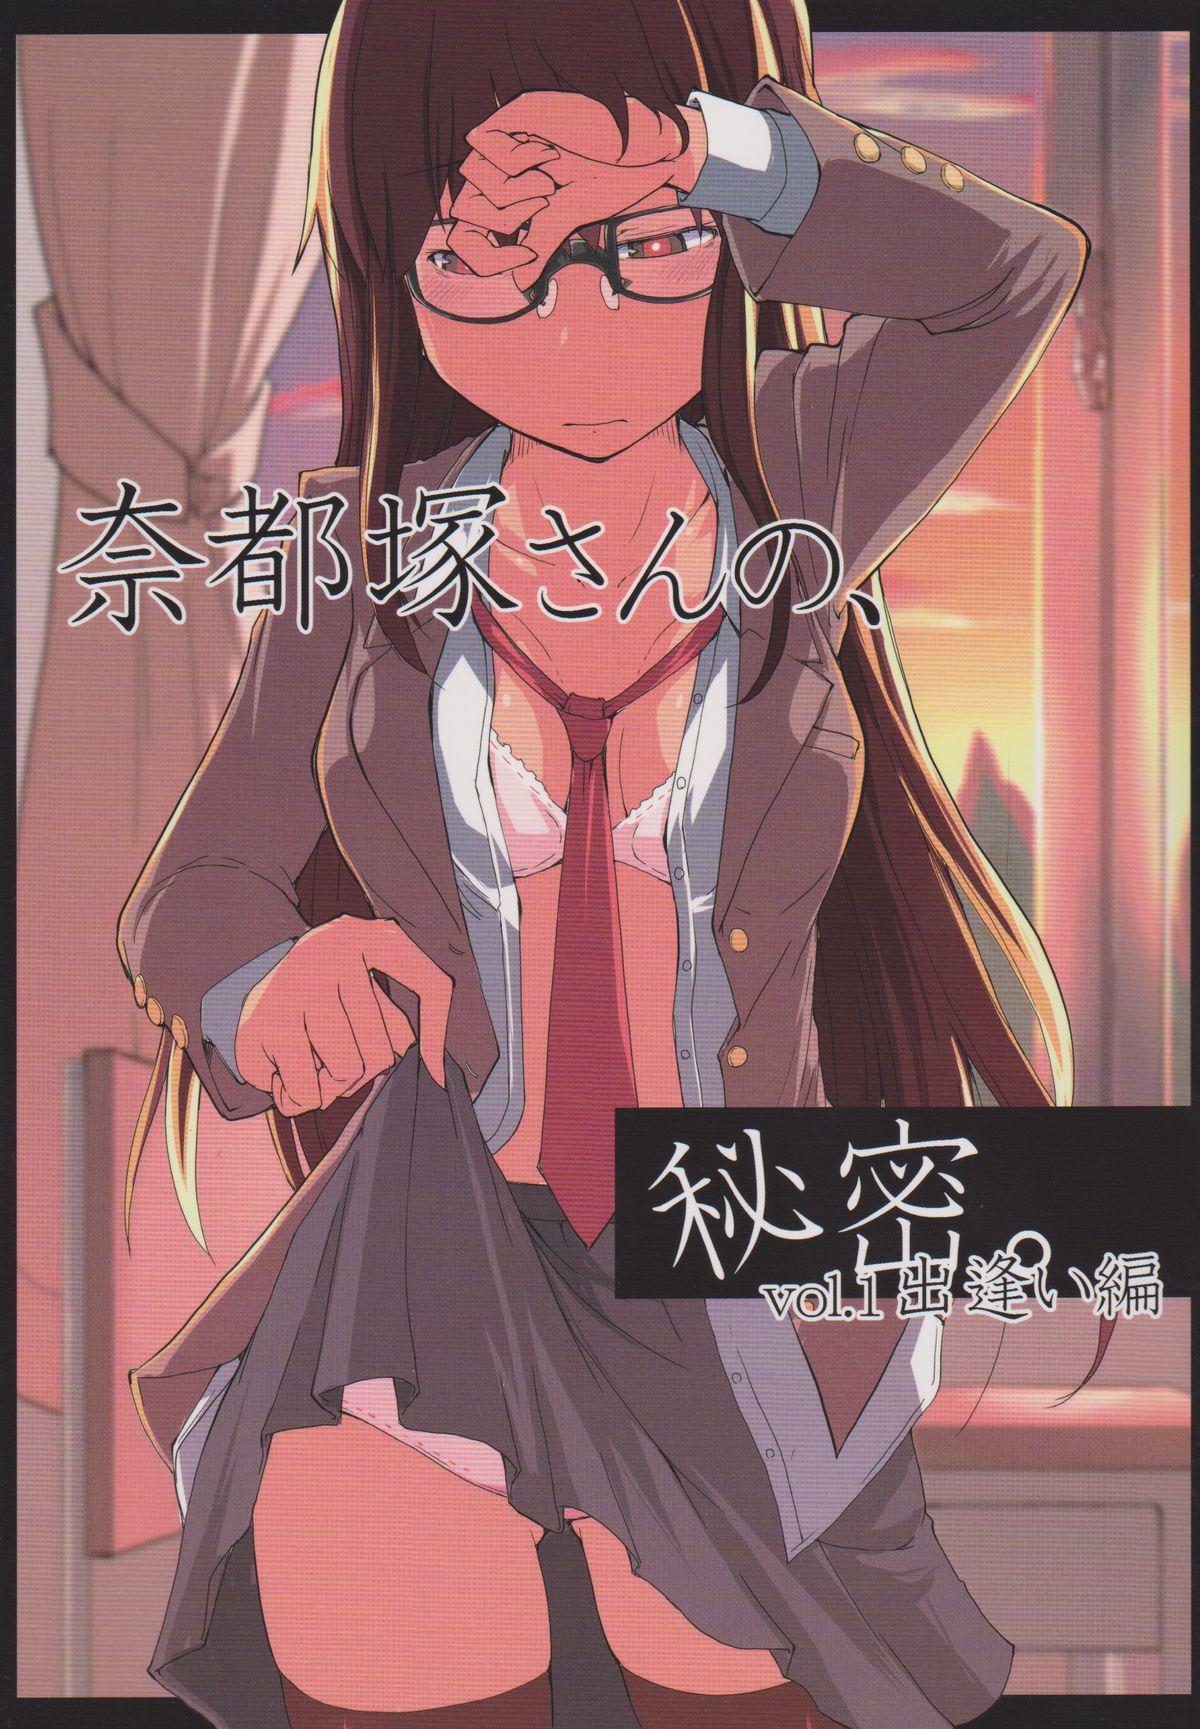 Natsuzuka san no Himitsu. Vol.1 Deai Hen 0